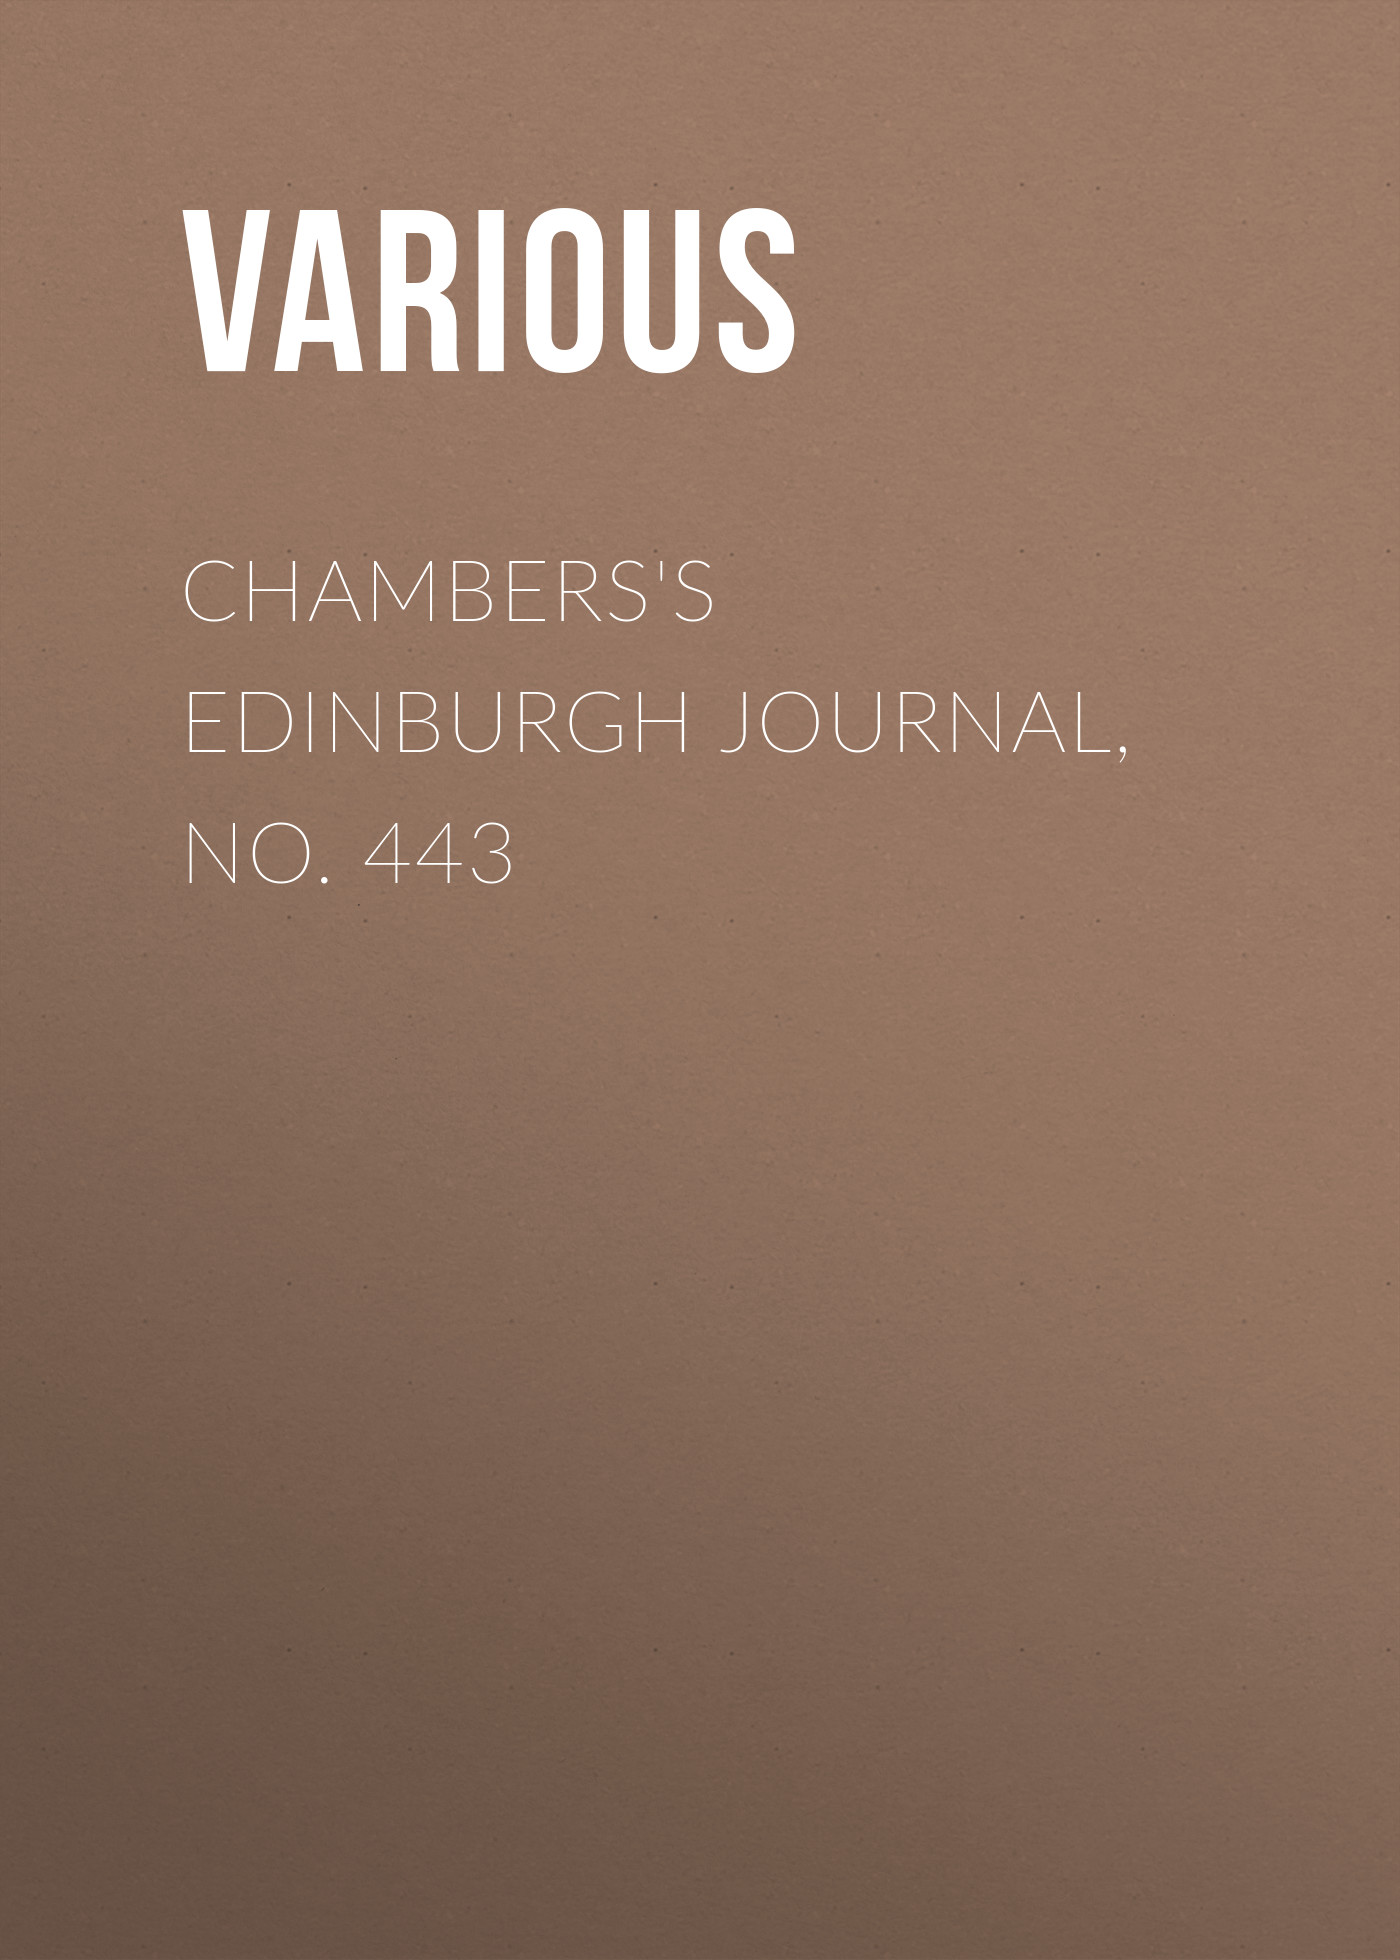 Chambers's Edinburgh Journal, No. 443